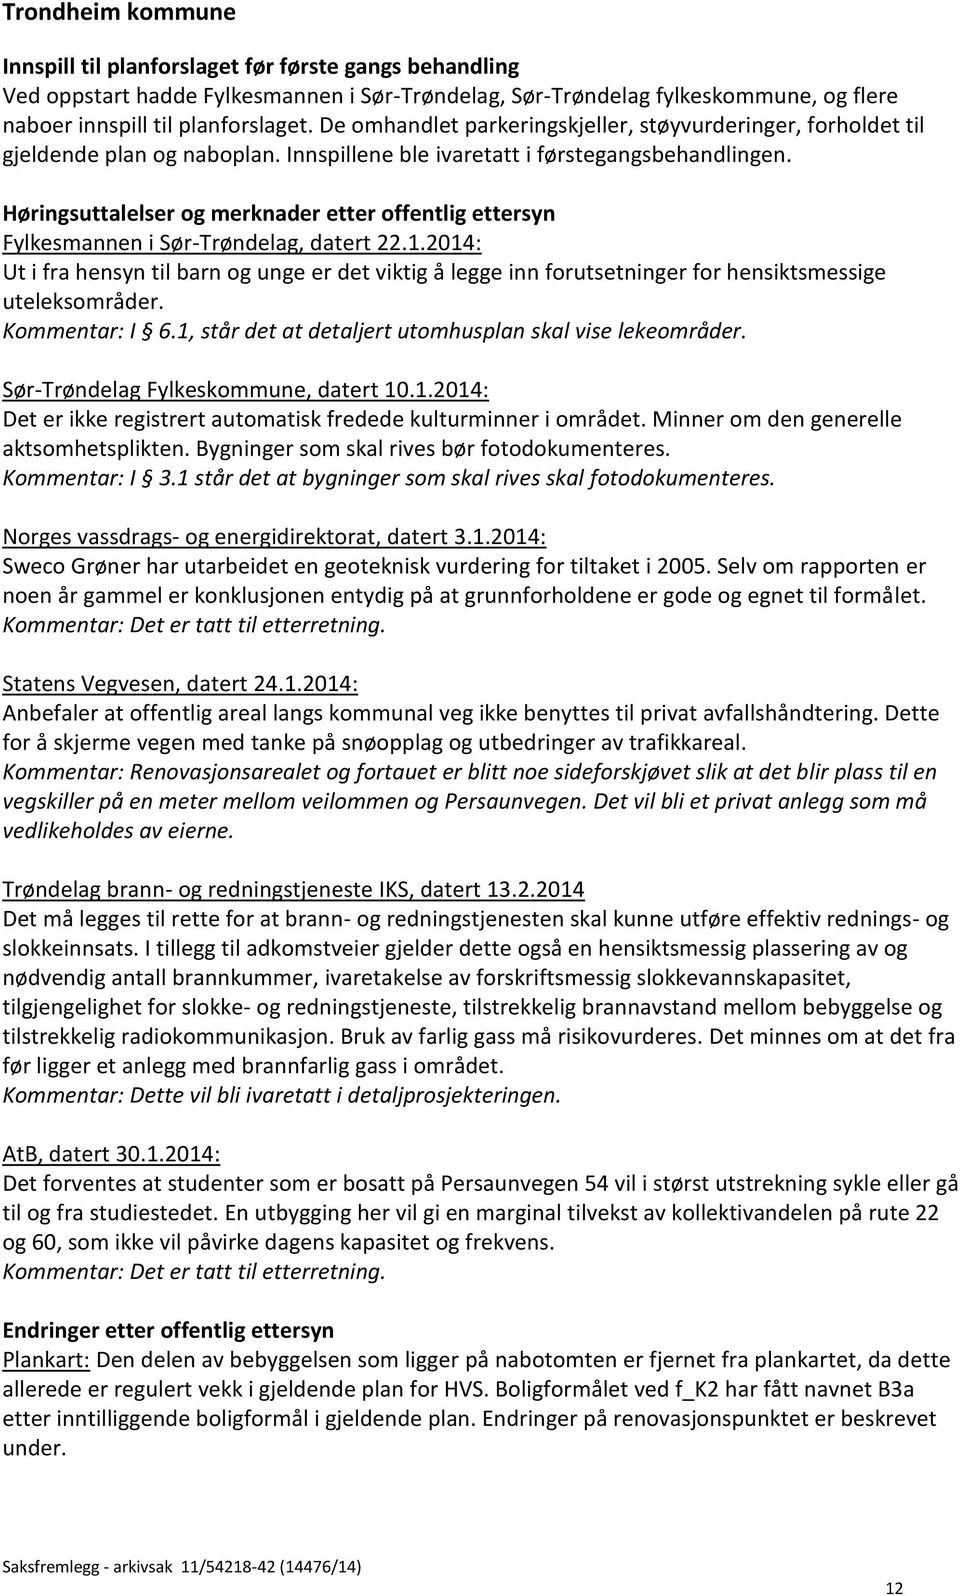 Høringsuttalelser og merknader etter offentlig ettersyn Fylkesmannen i Sør-Trøndelag, datert 22.1.